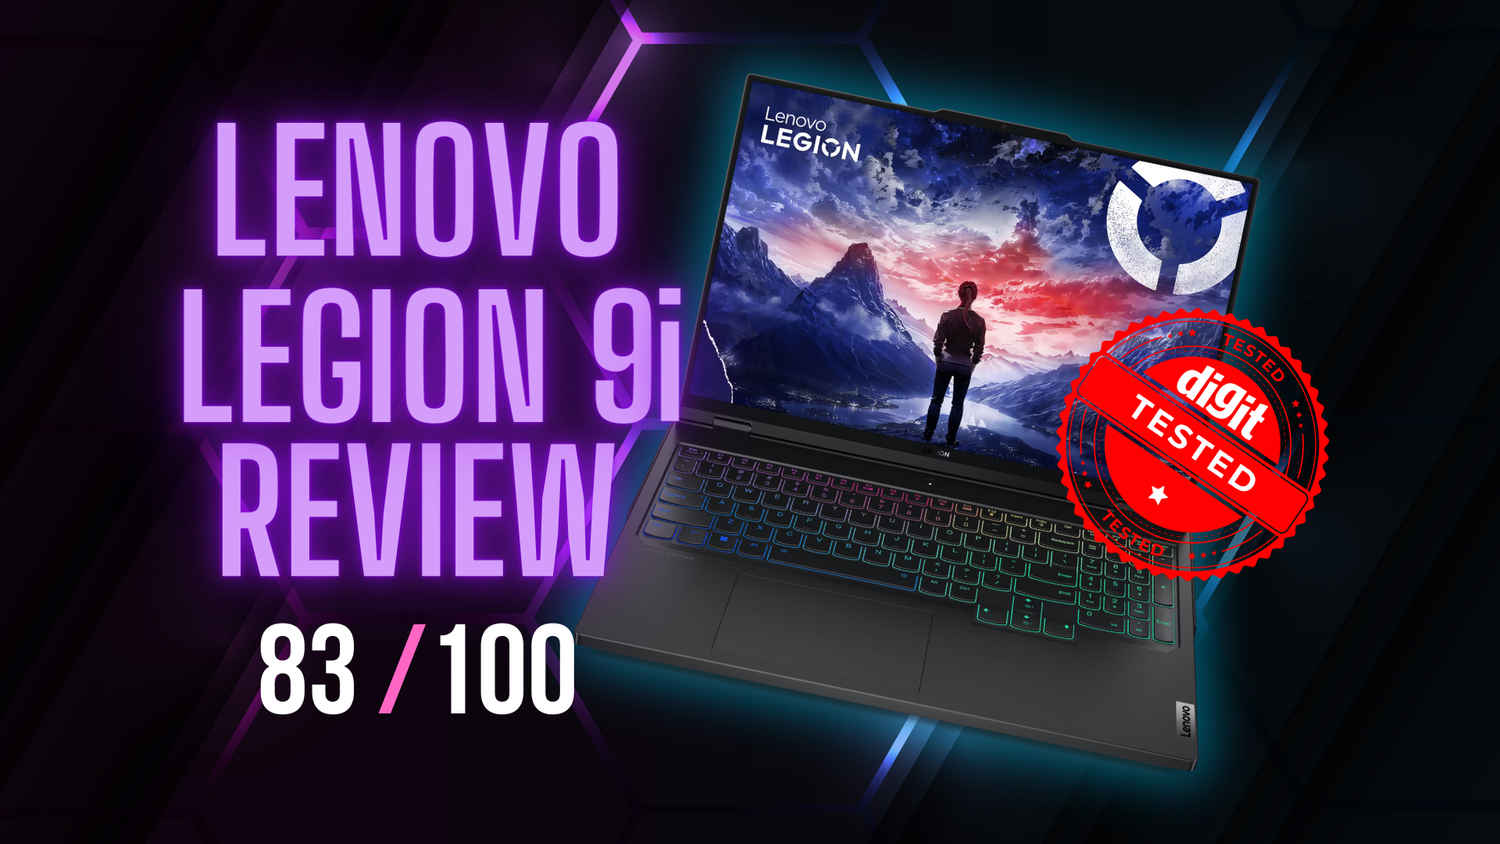 Lenovo Legion 9i Review: The Best Legion is Back